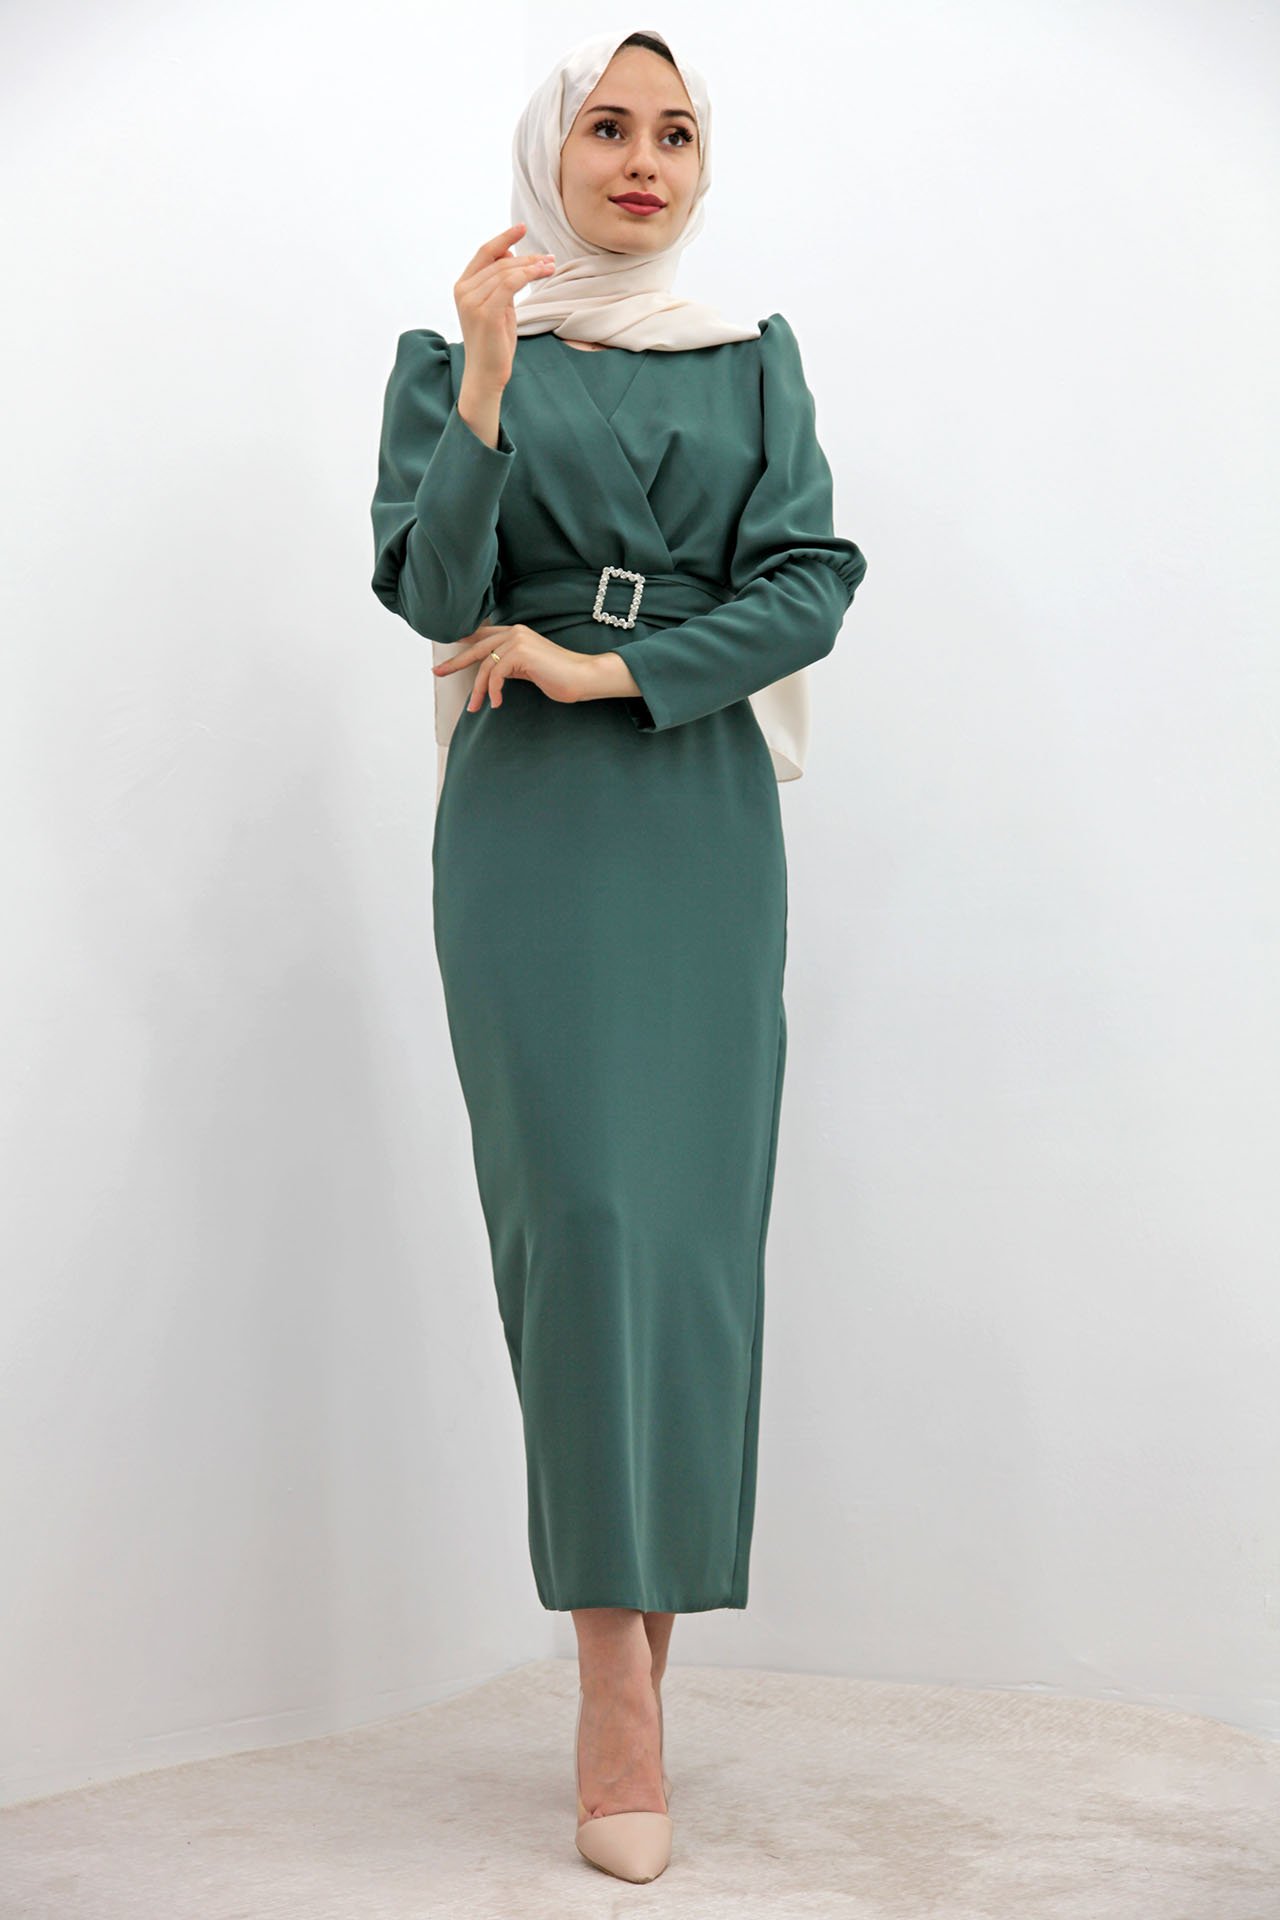 GİZAGİYİM - Önü Çapraz Kalem Elbise Mint Yeşil